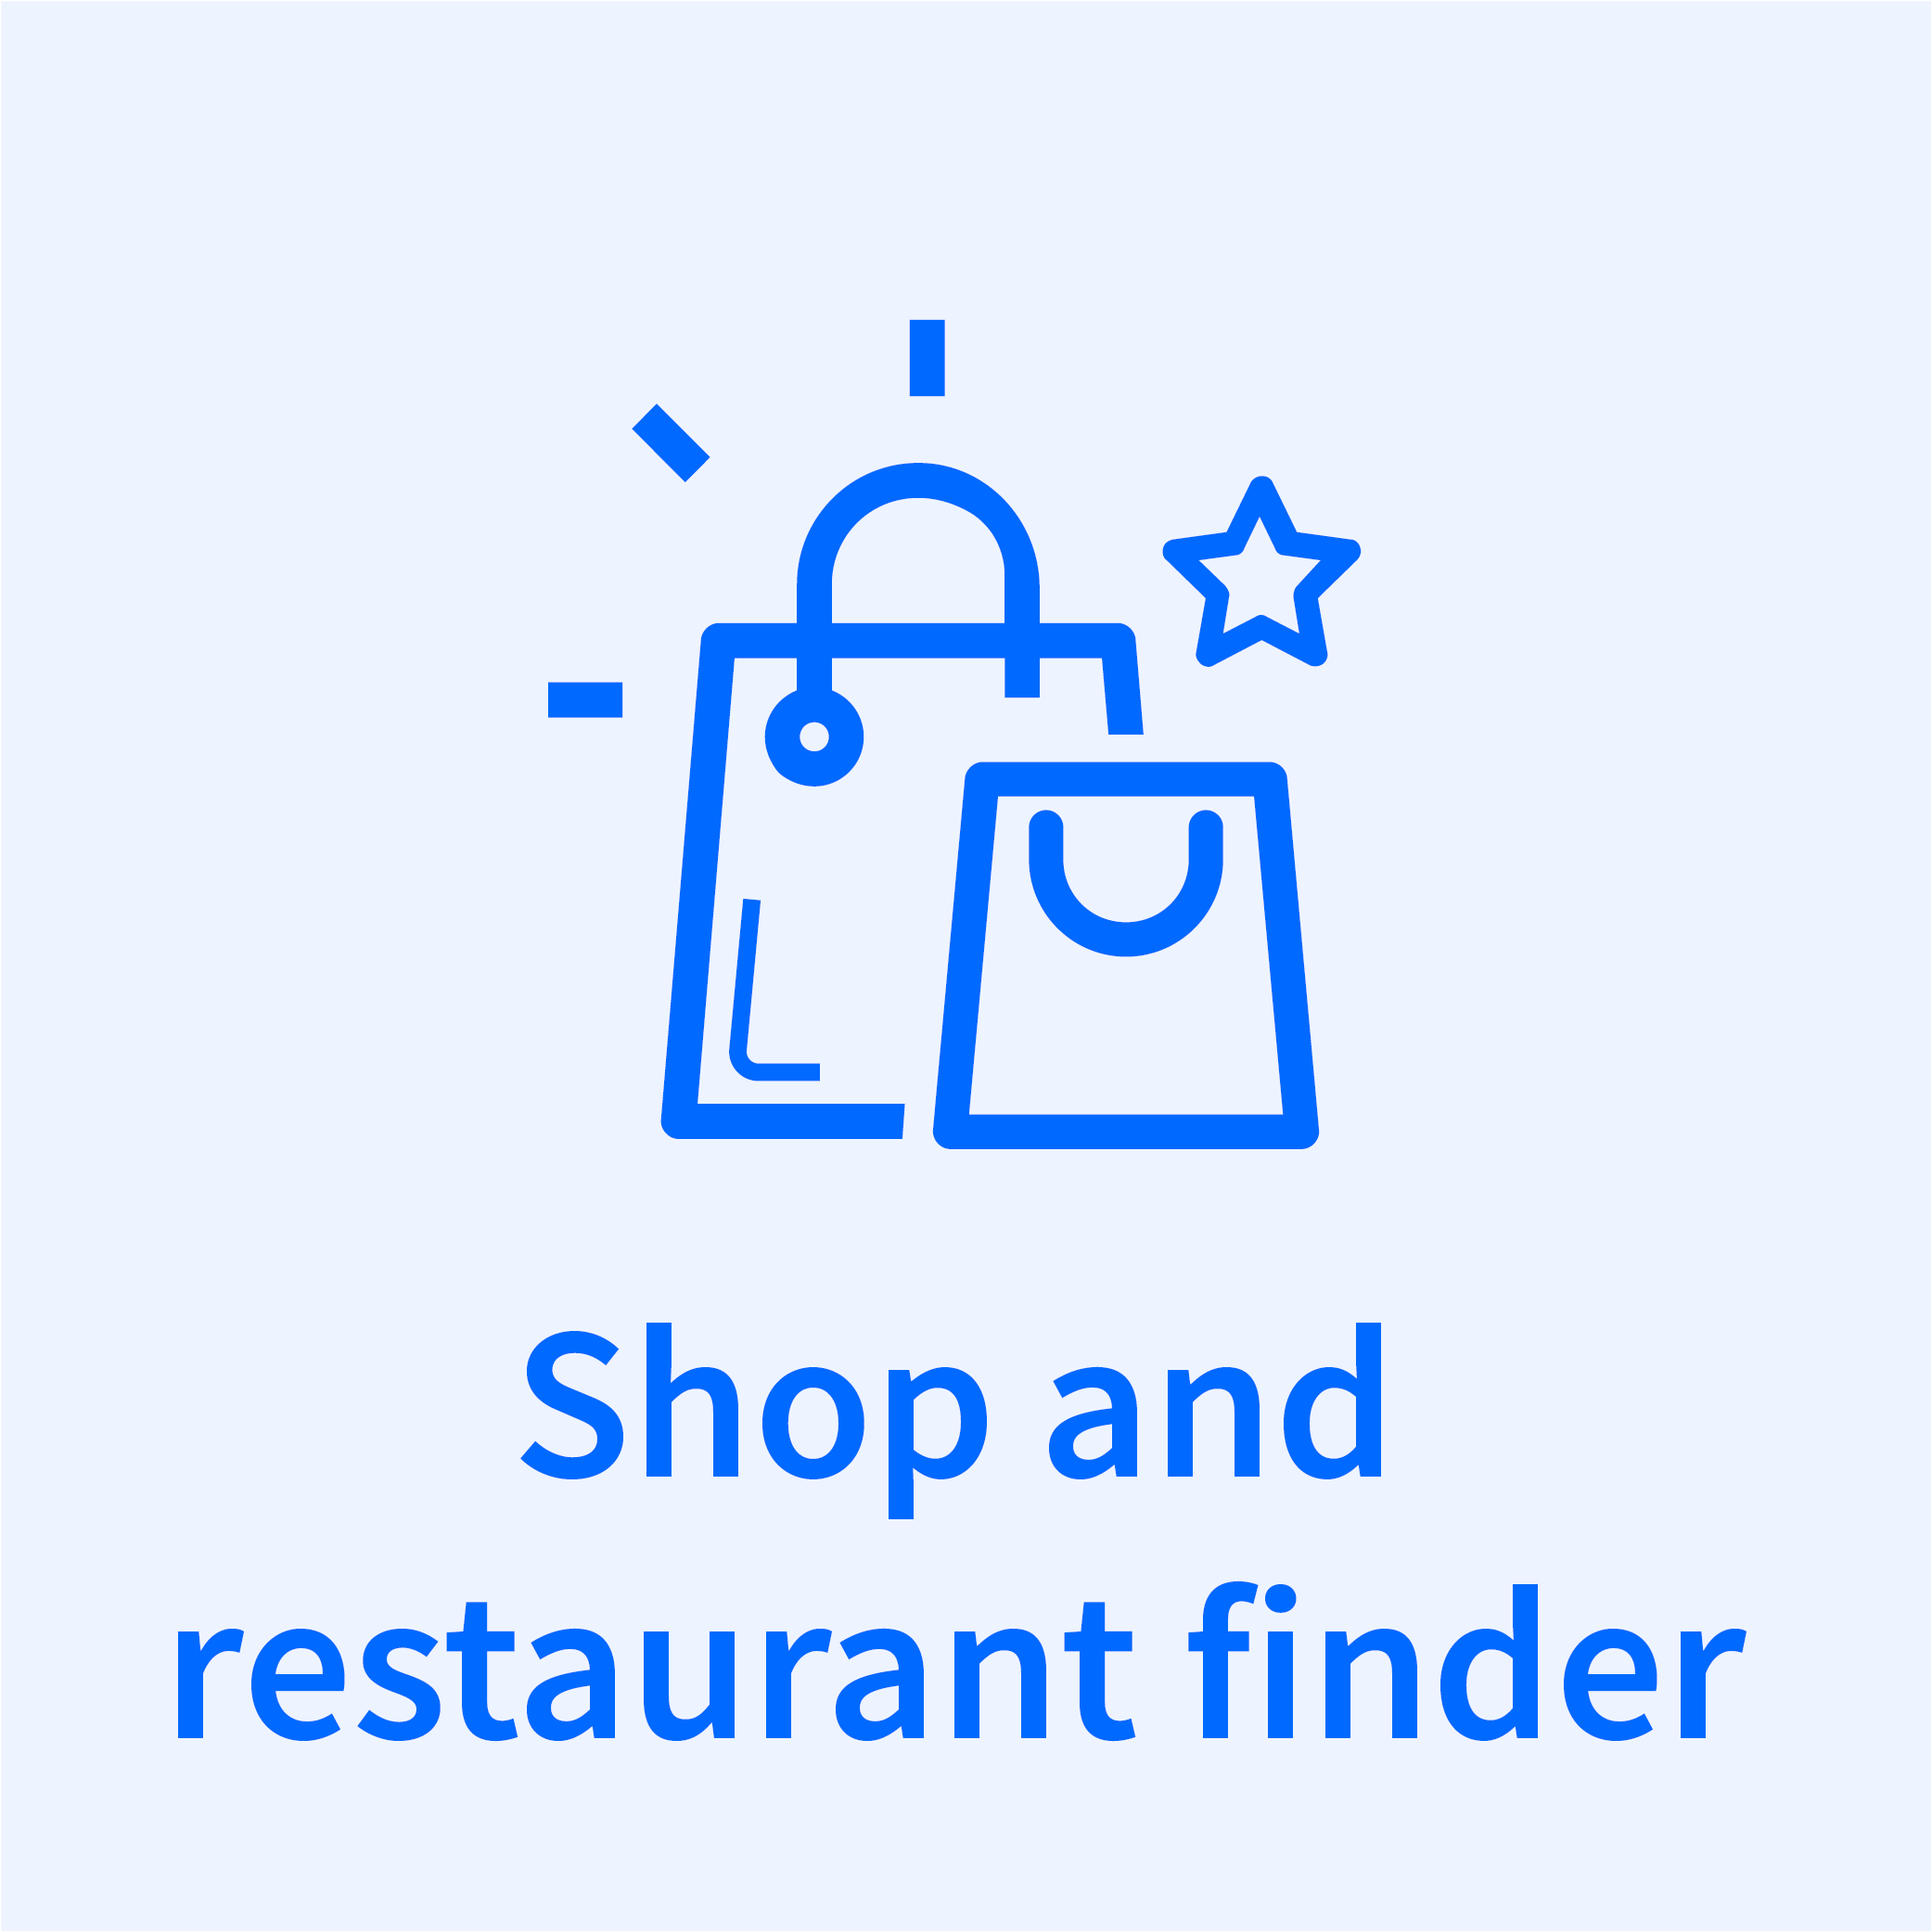 Shop and restaurant finder